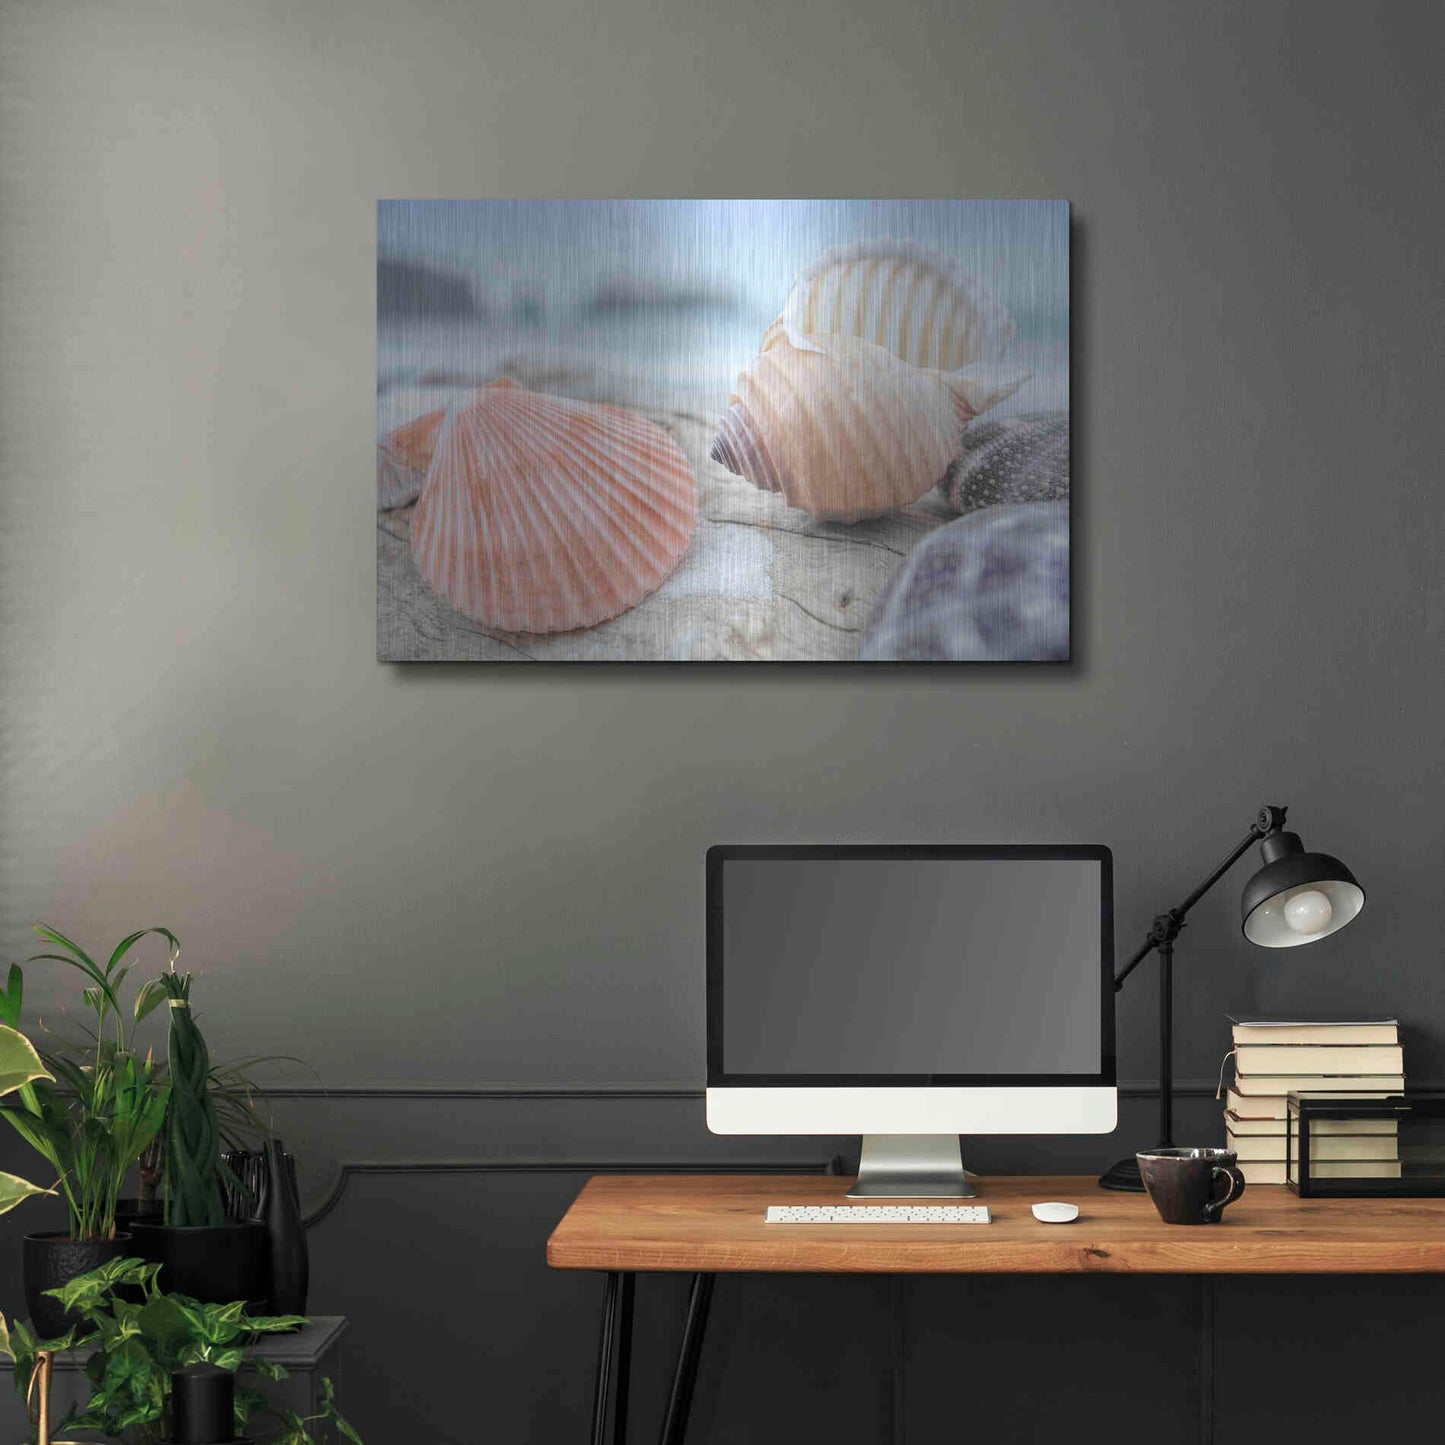 Luxe Metal Art 'Crescent Beach Shells 10' by Alan Blaustein Metal Wall Art,36x24